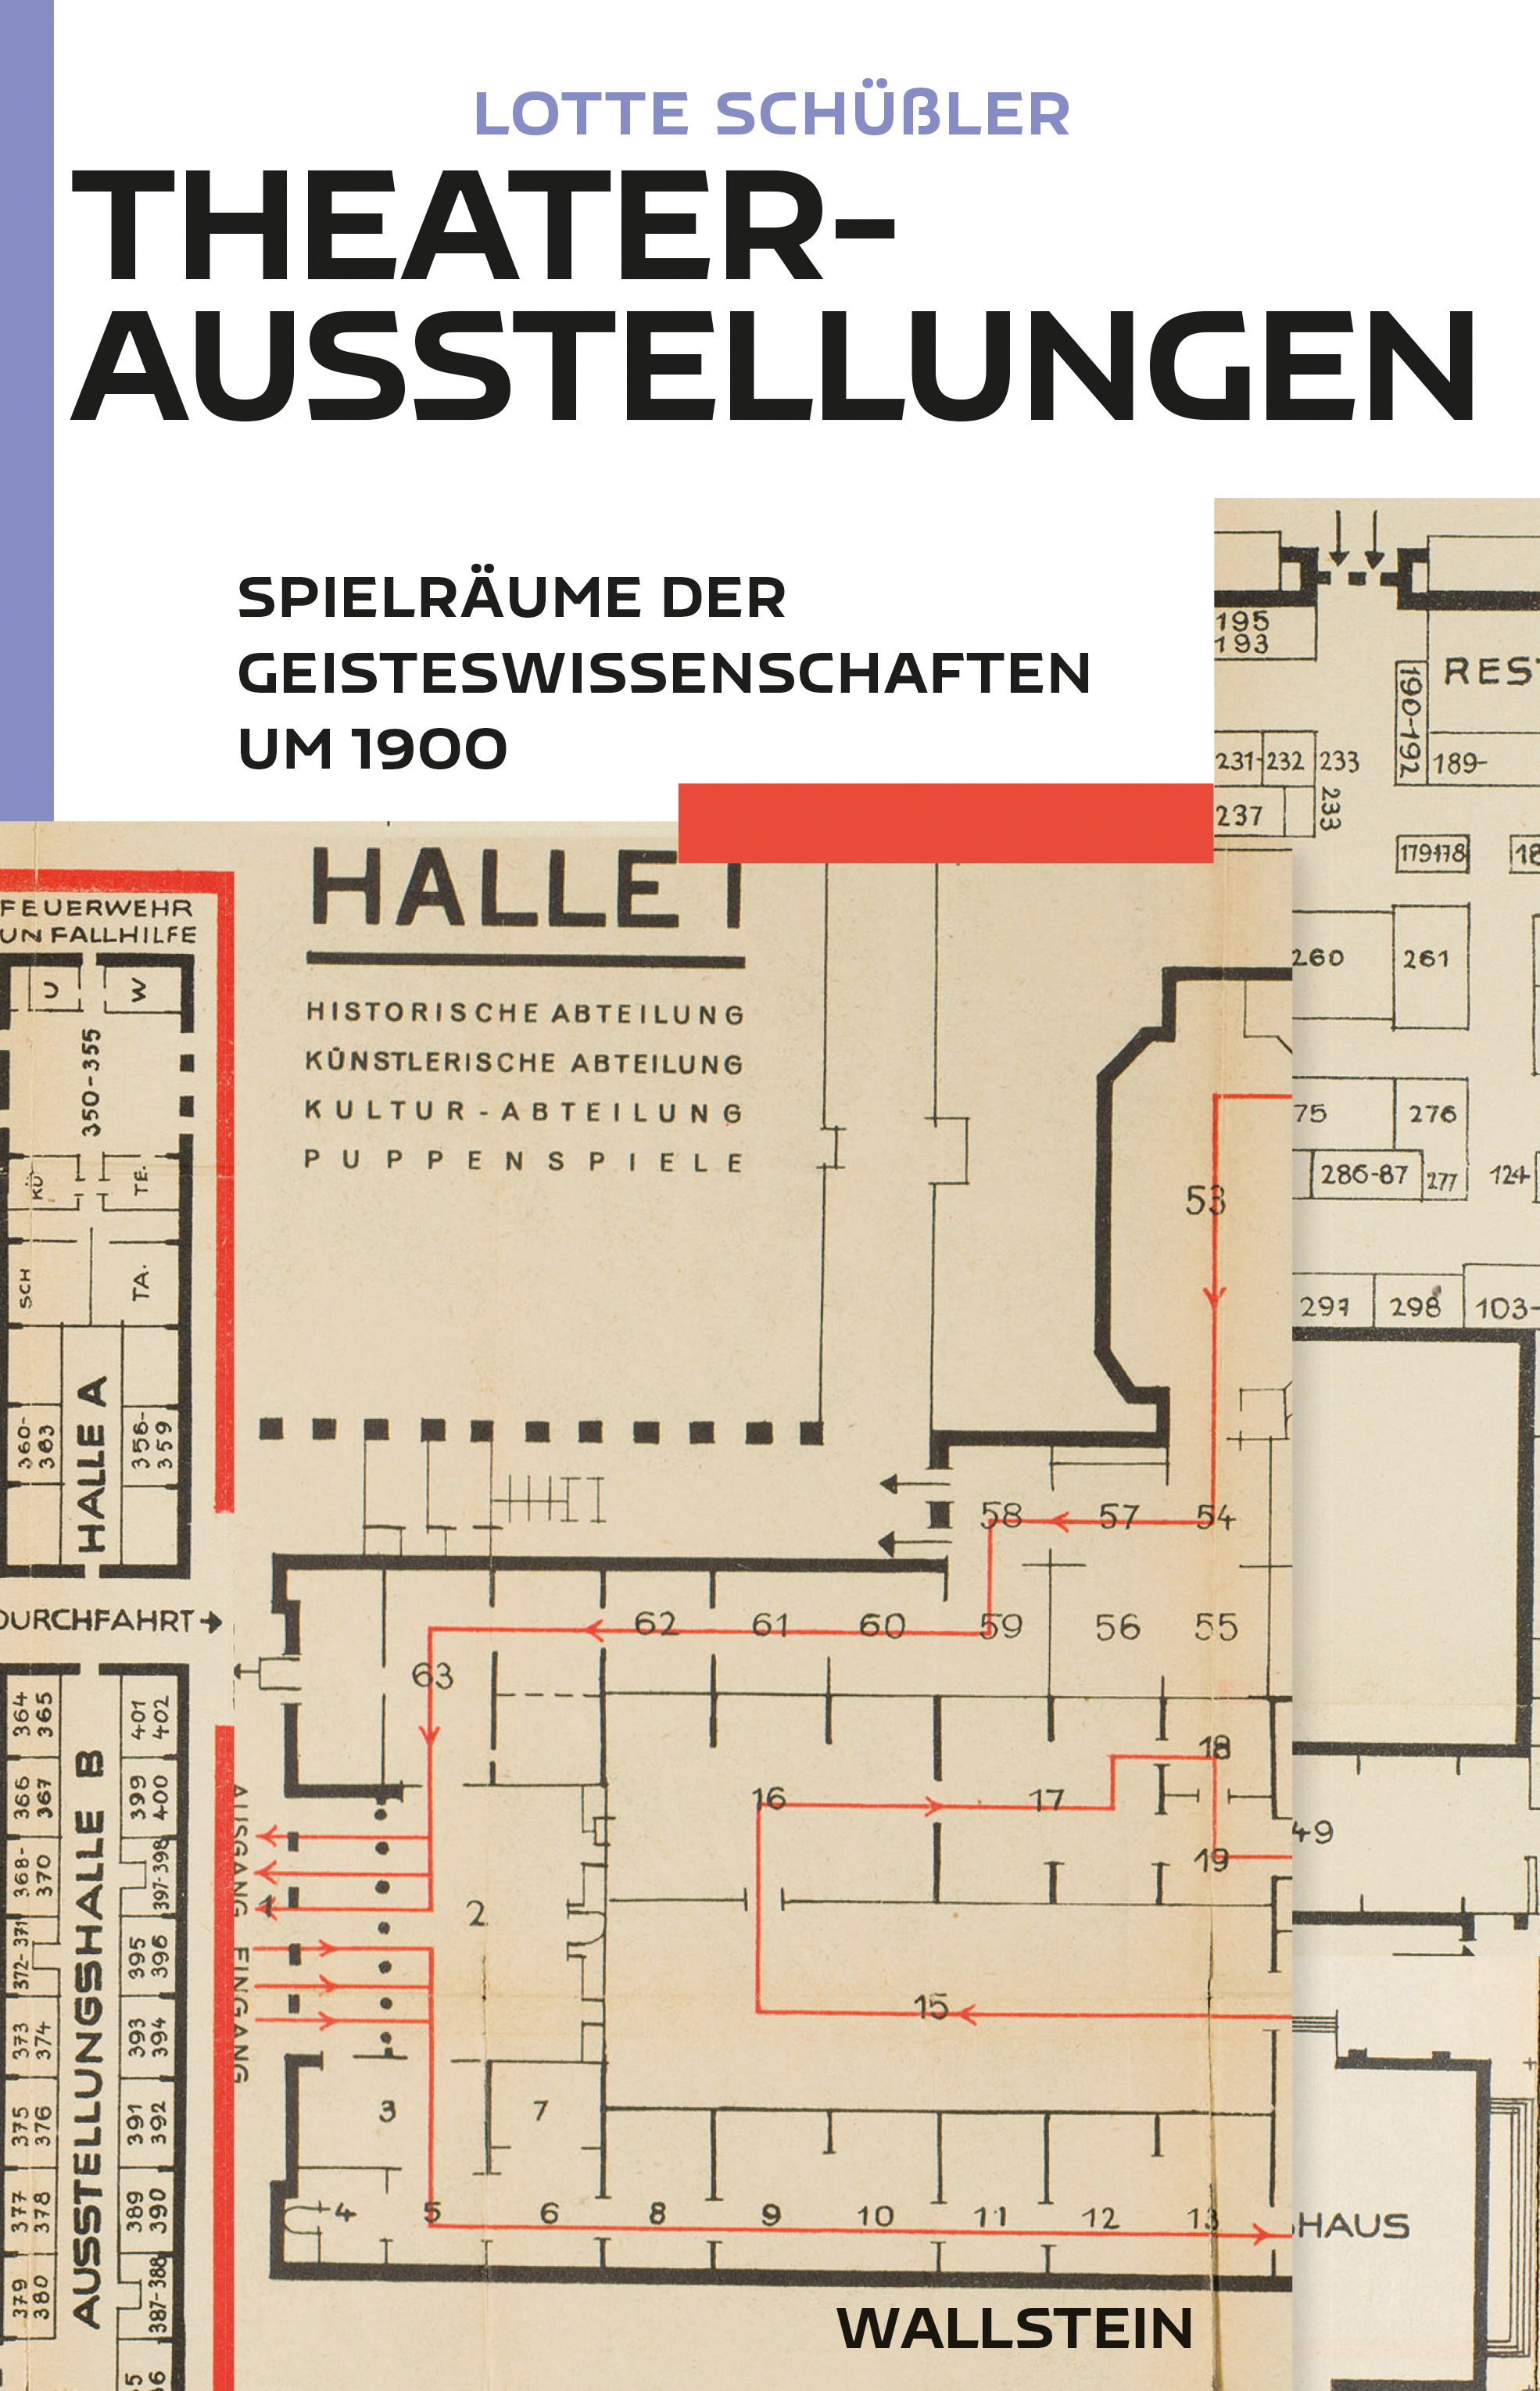 Cover von Lotte Schüßlers Buch "Theaterausstellungen"